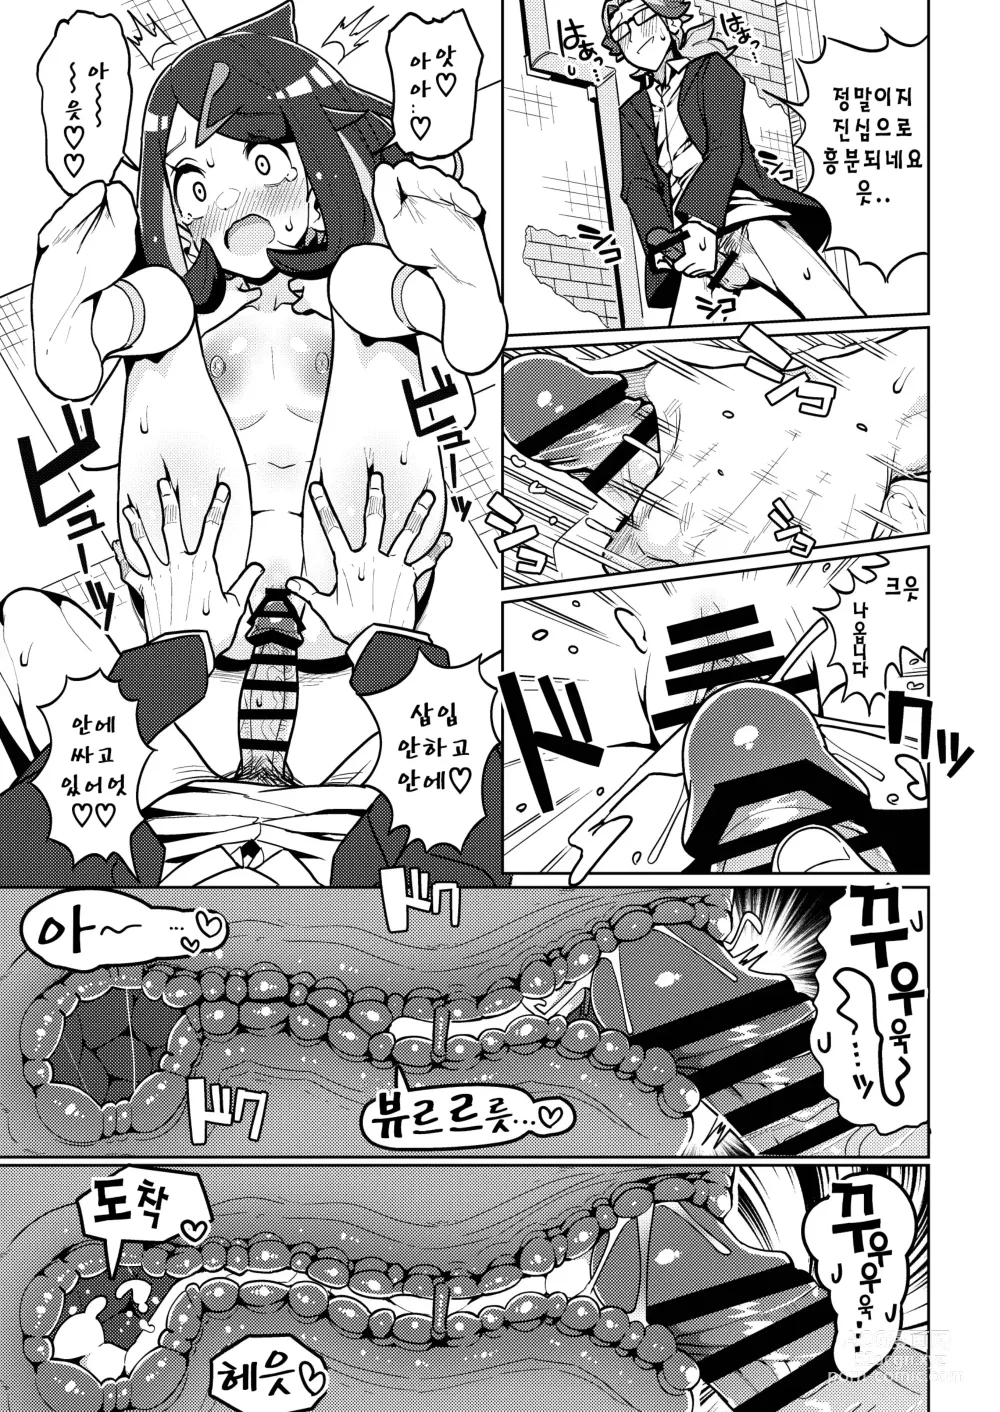 Page 12 of doujinshi 사이코파워라는건 대체 뭐죠?